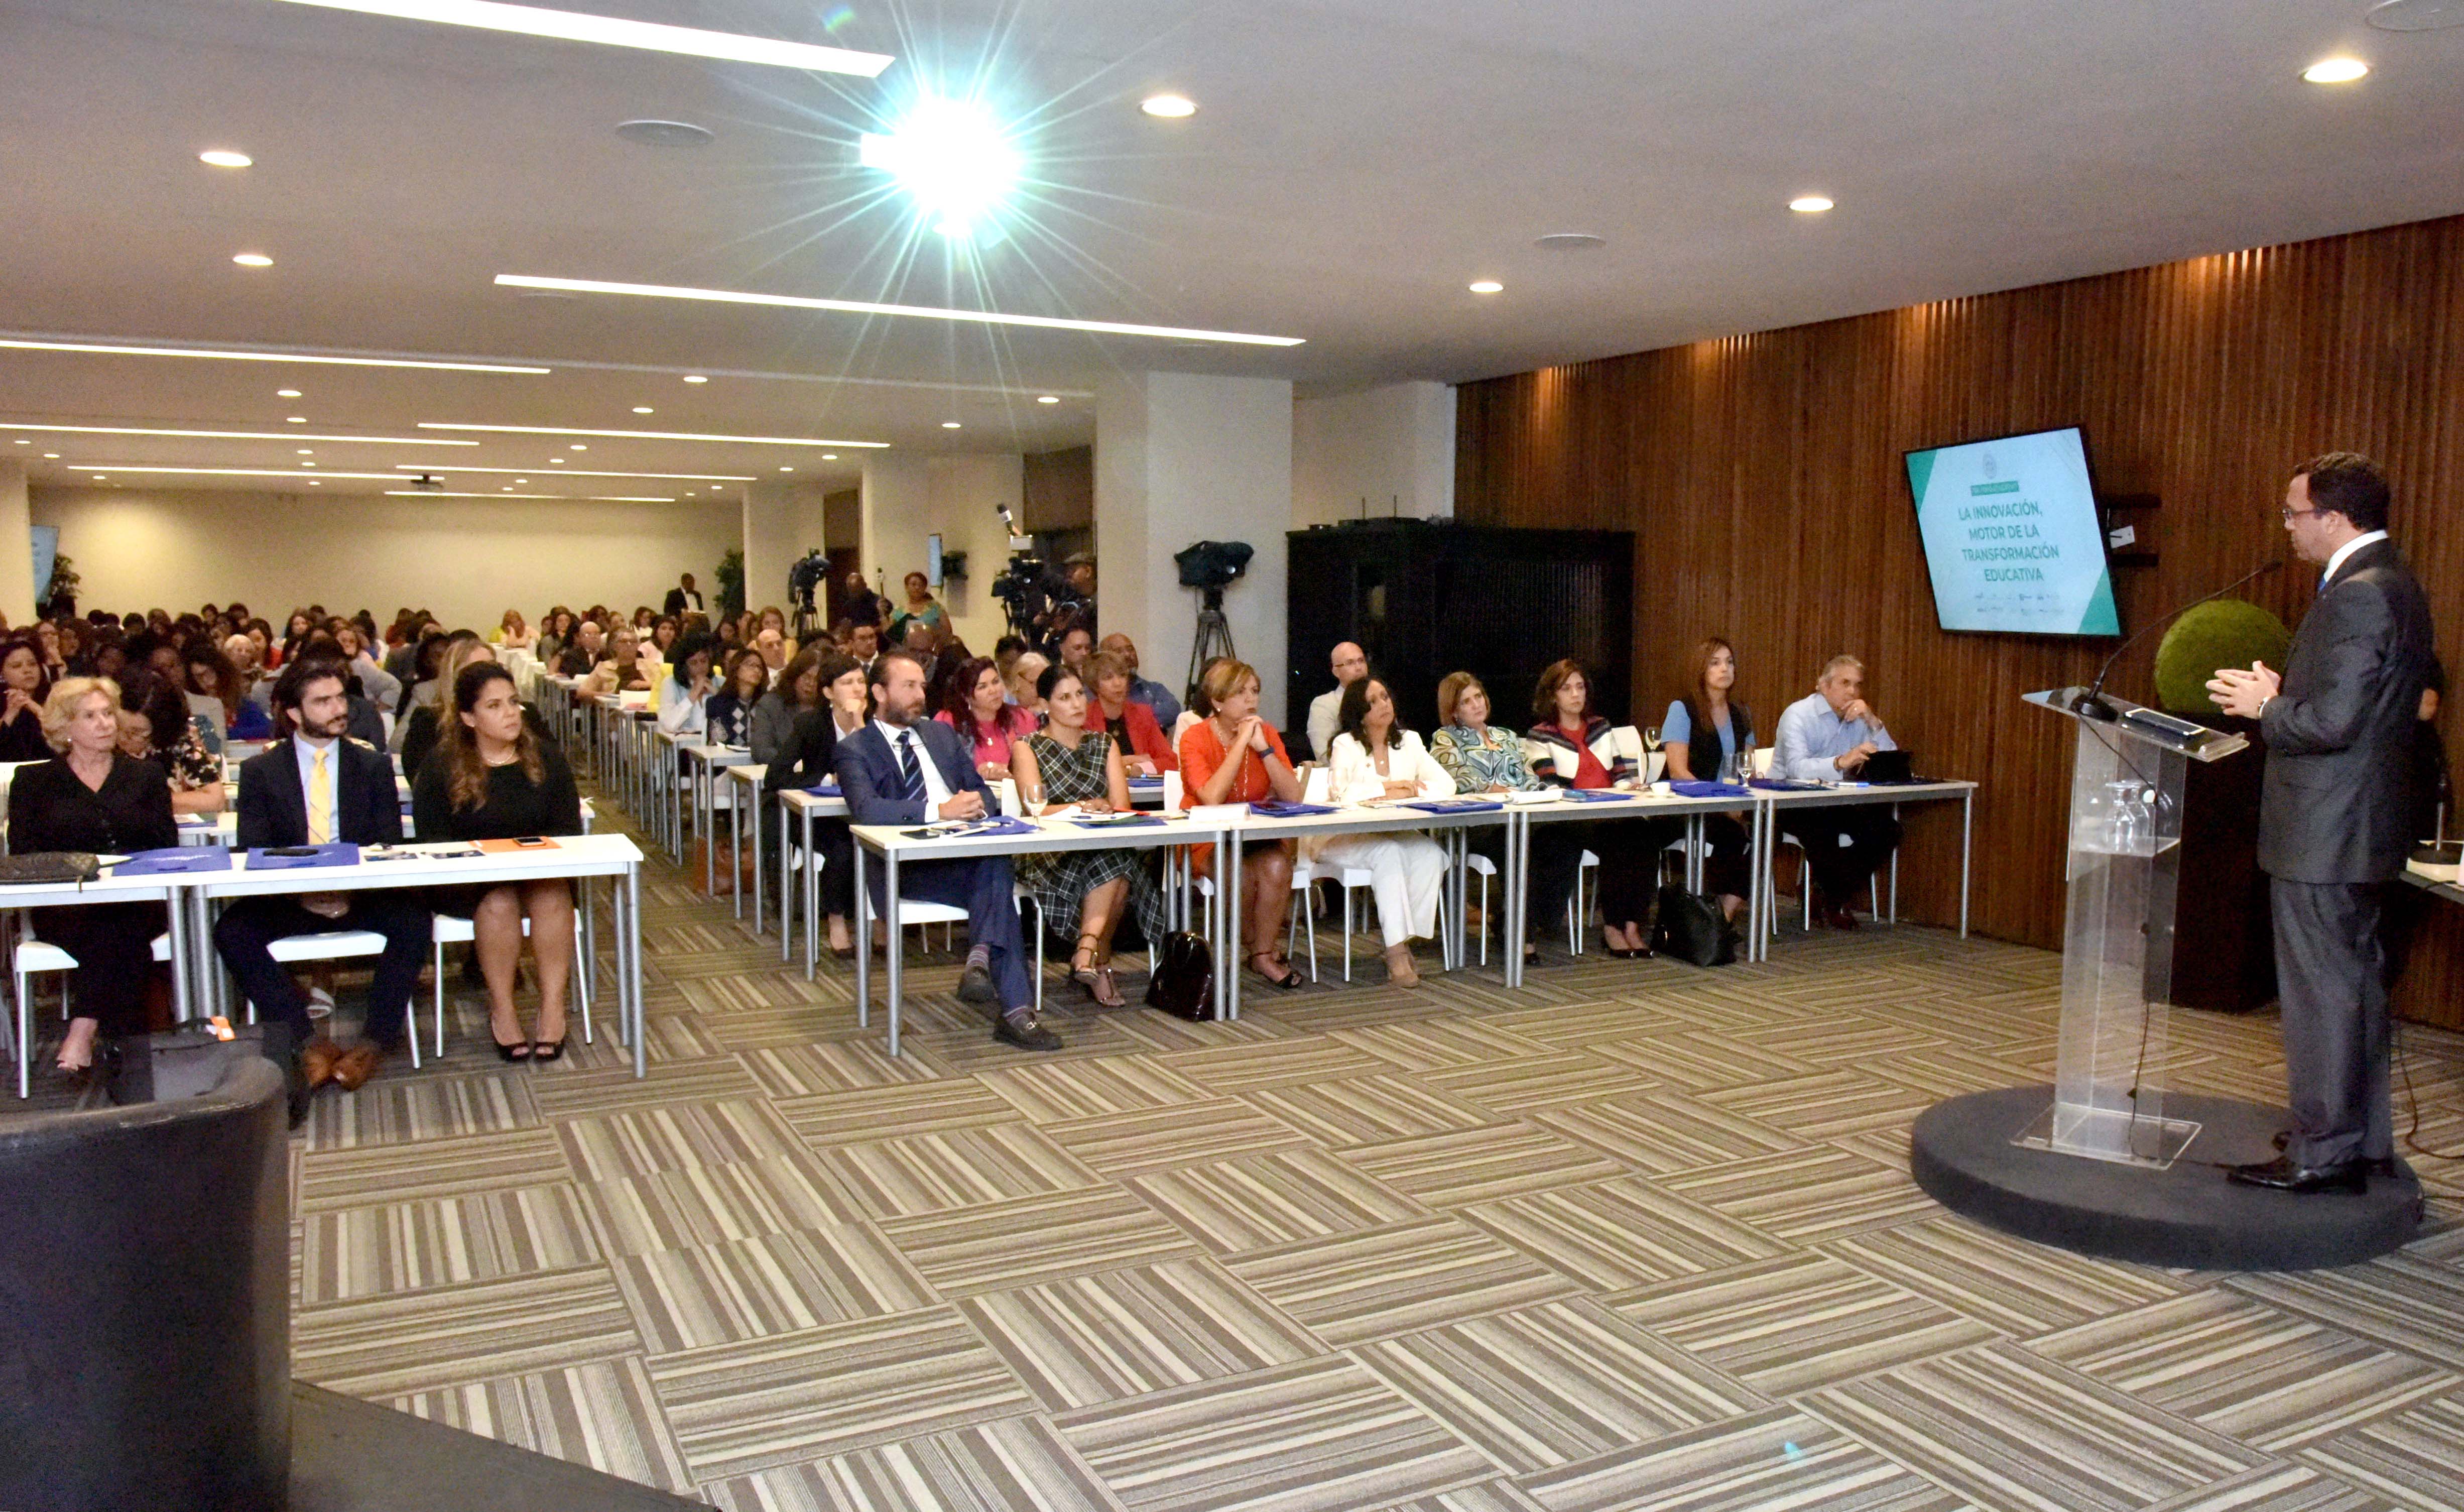  imagen  Ministro Andres Navarro de pie desde podium se dirige a cientos de participantes en conferencia sobre educacion  